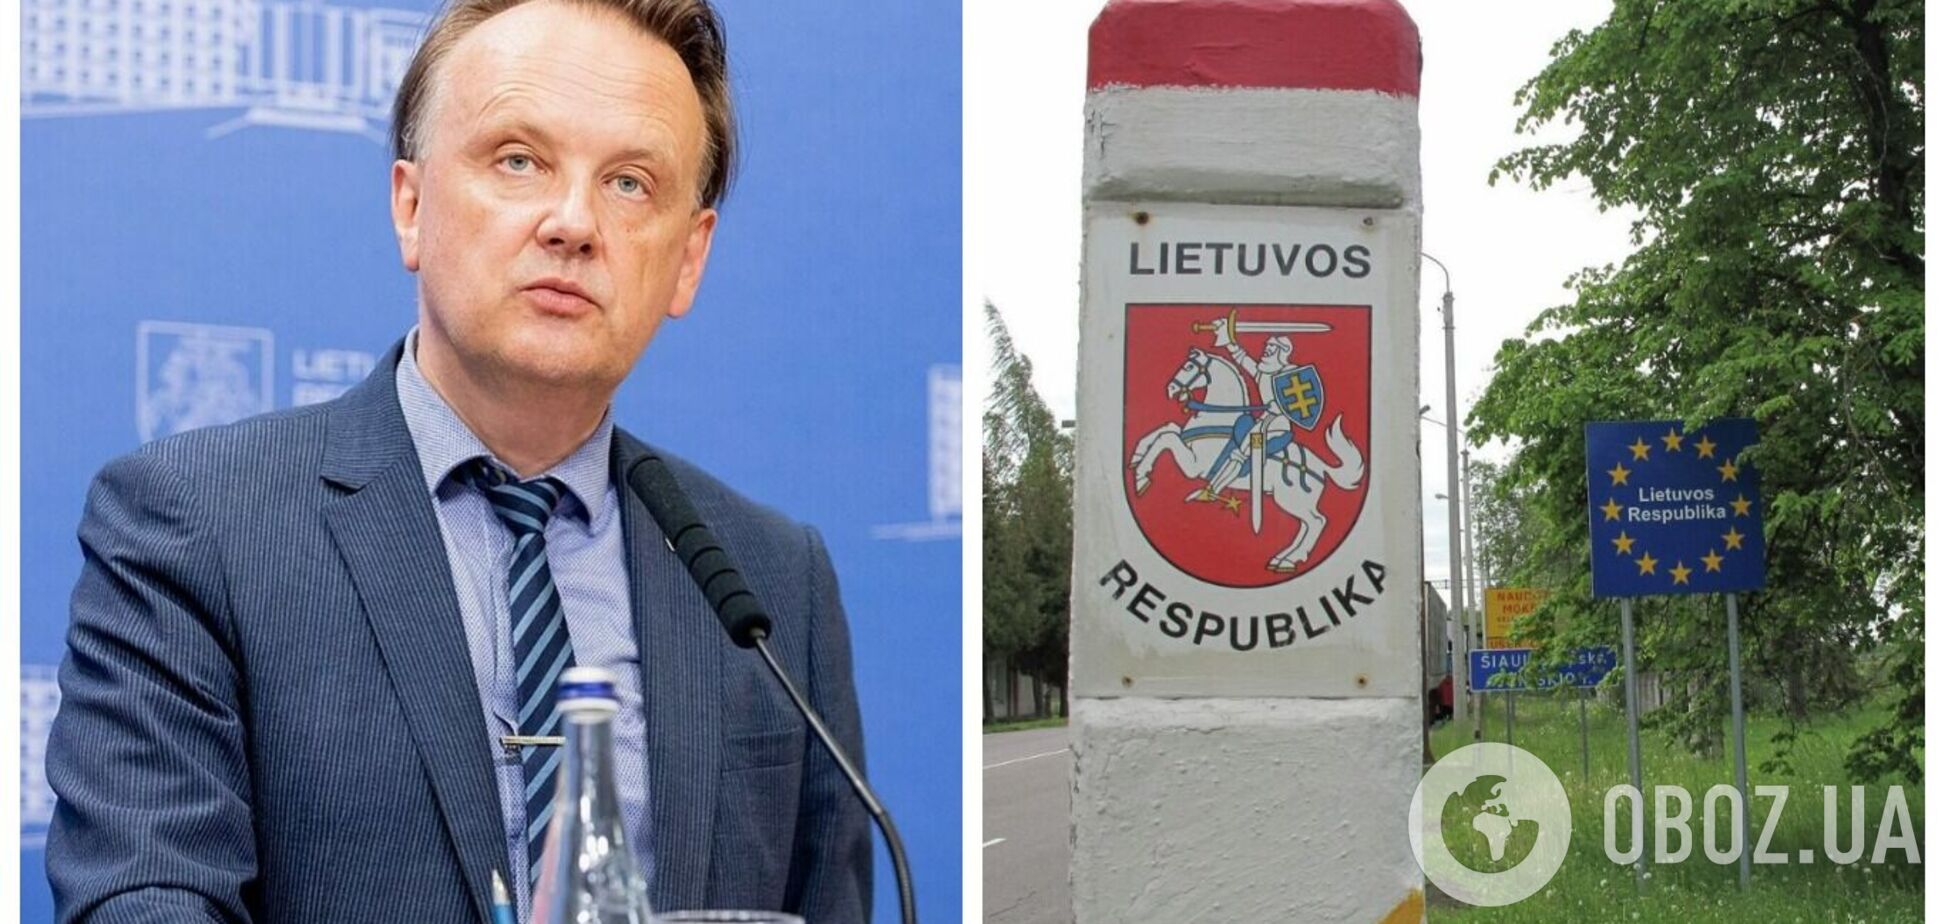 Литва закроет часть границы с Беларусью из-за угрозы вагнеровцев